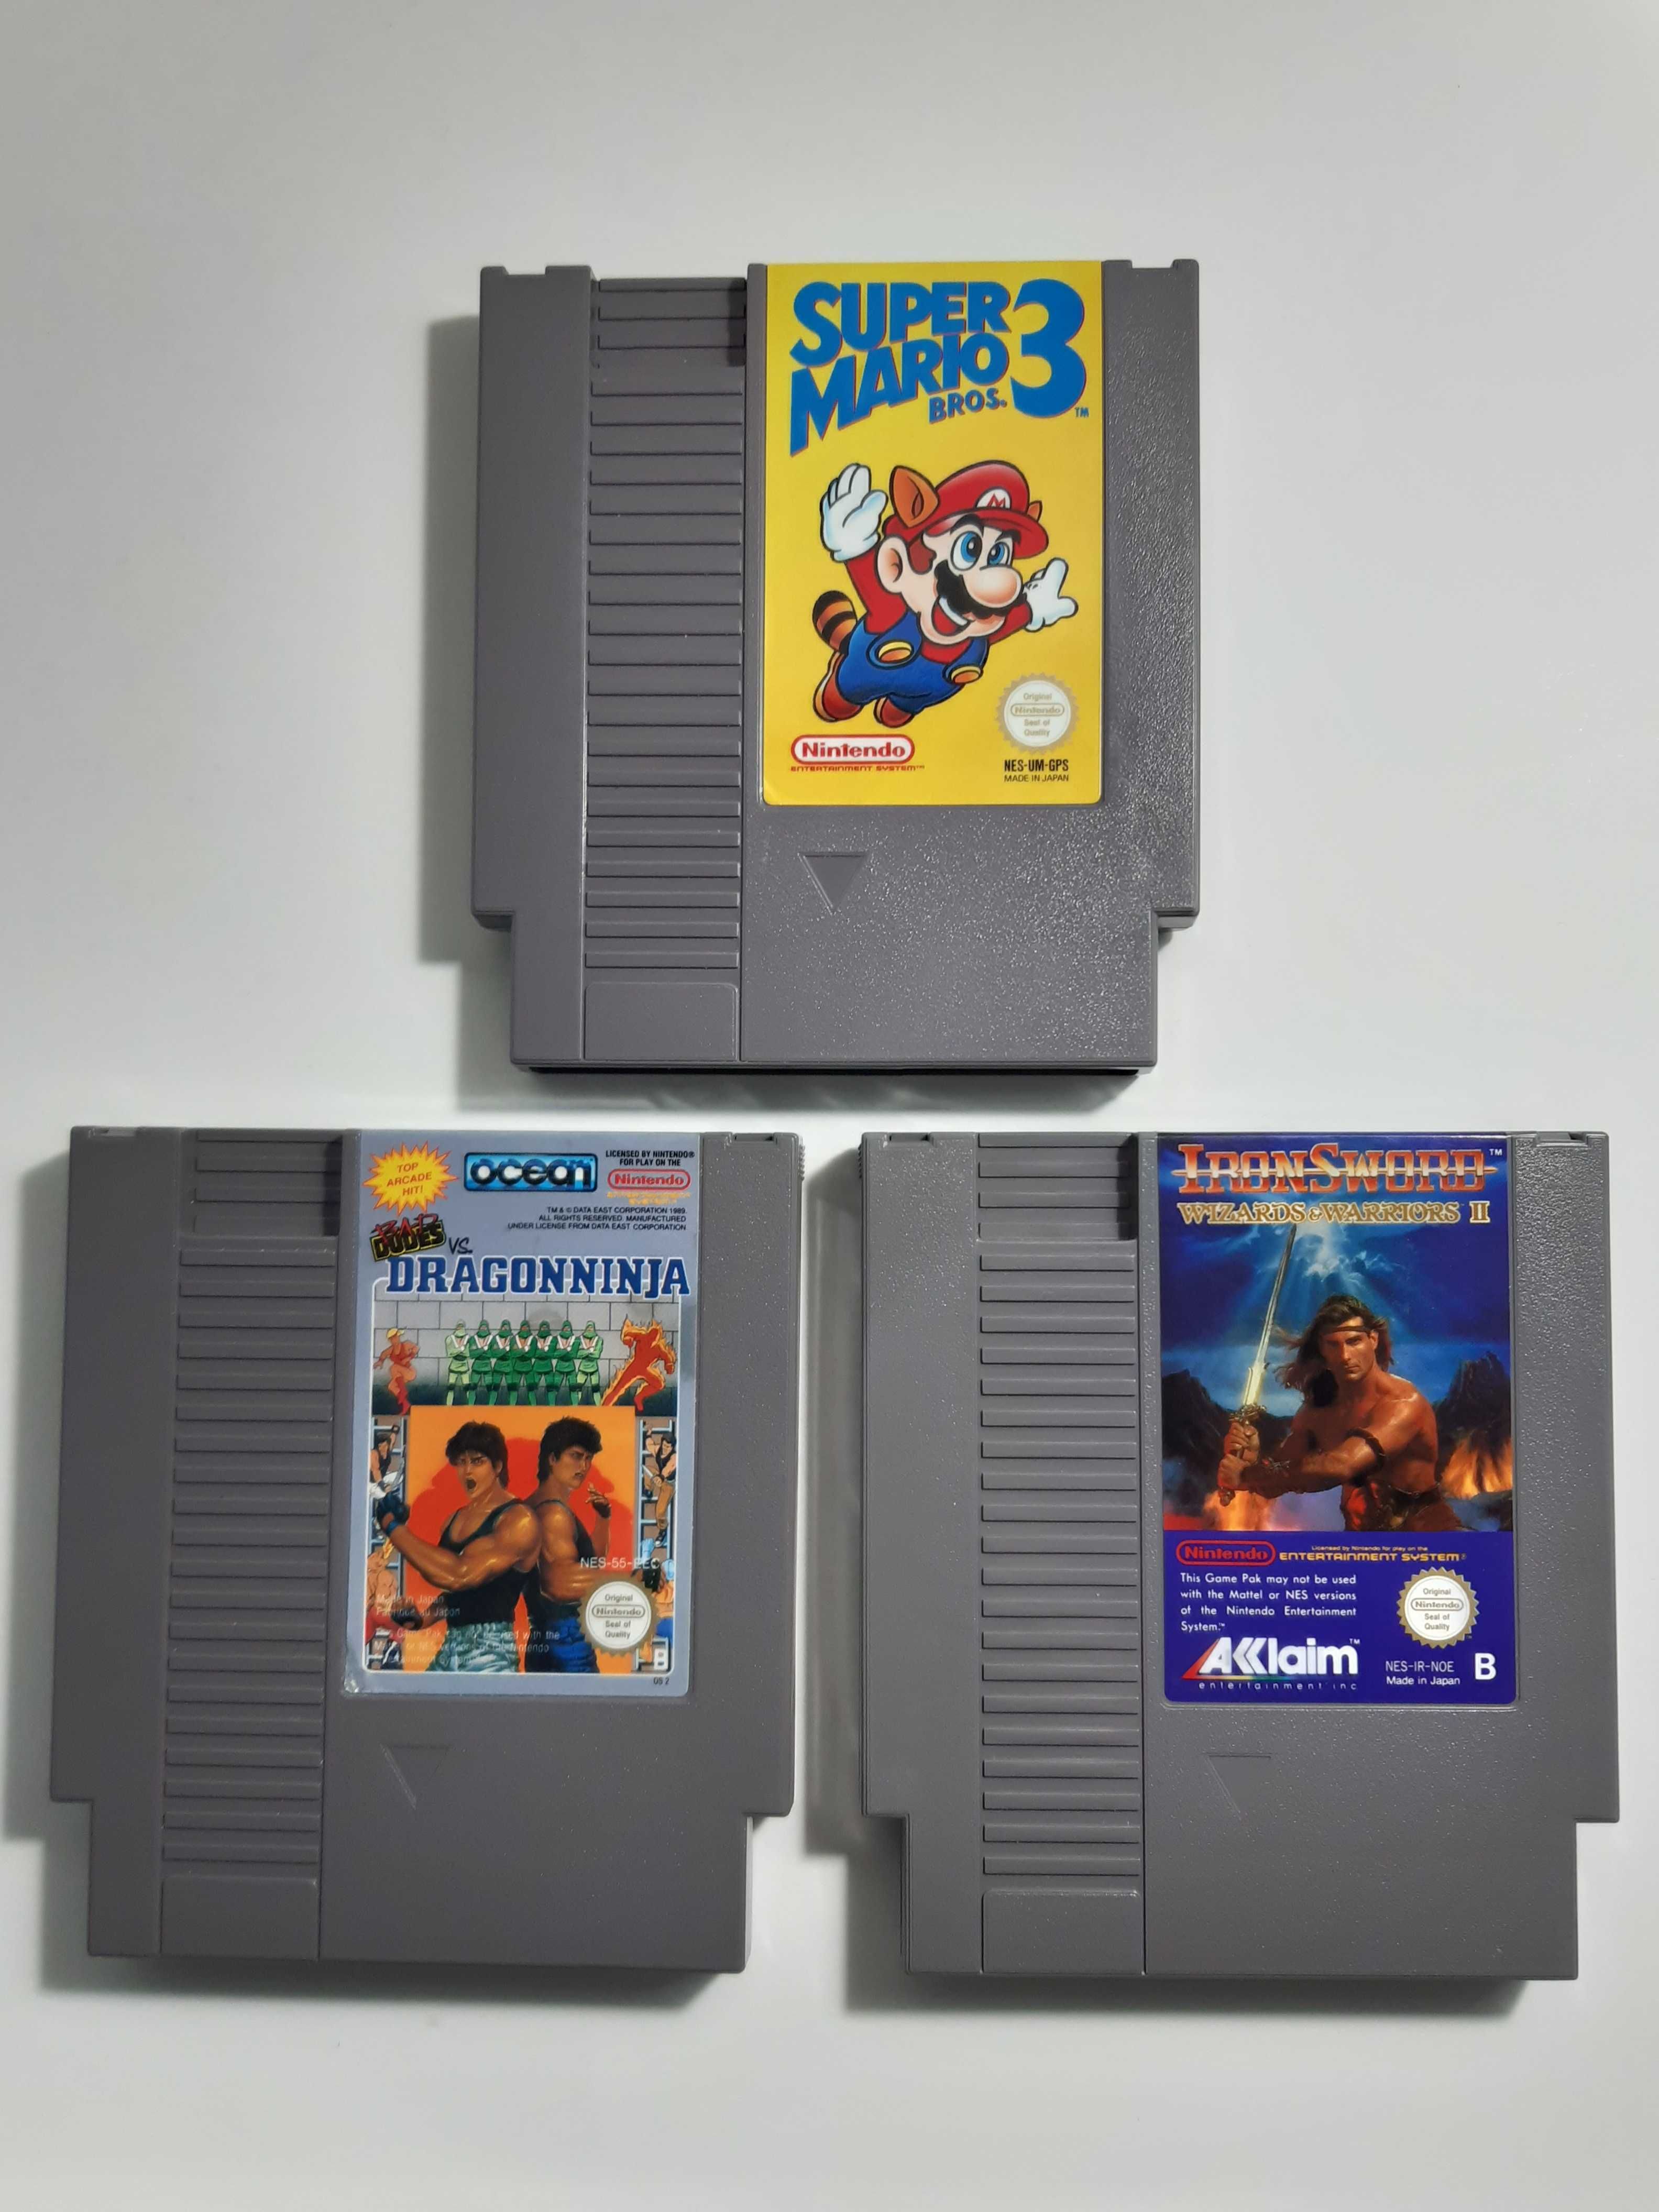 Jogos Nintendo Entertainment System / NES (Super Mario Bros.)